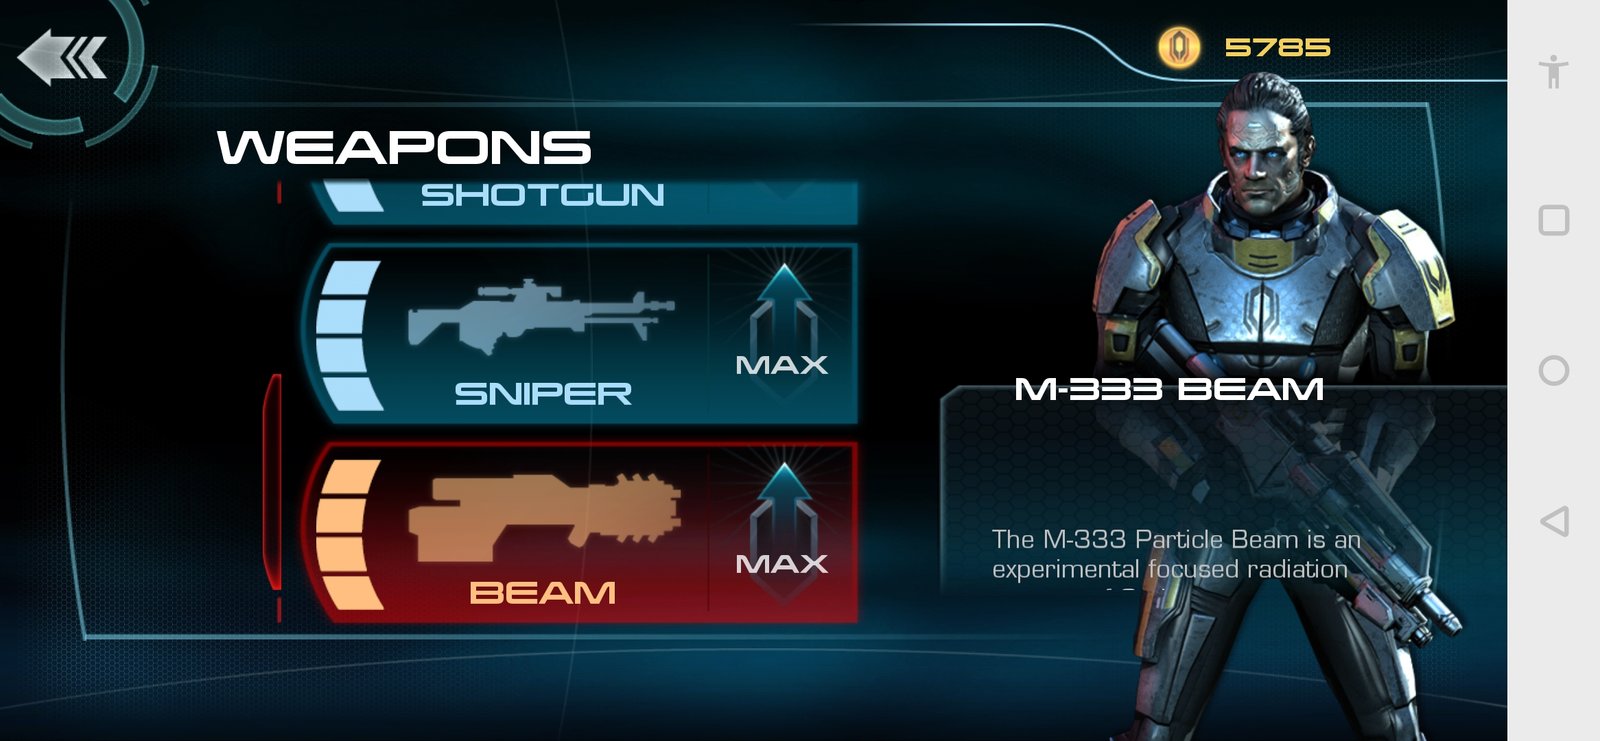 KUBOOM 3D: FPS Shooter Ver. 7.51 MOD MENU APK, Mass Kill, Unlimited Ammo, Spawn Bots